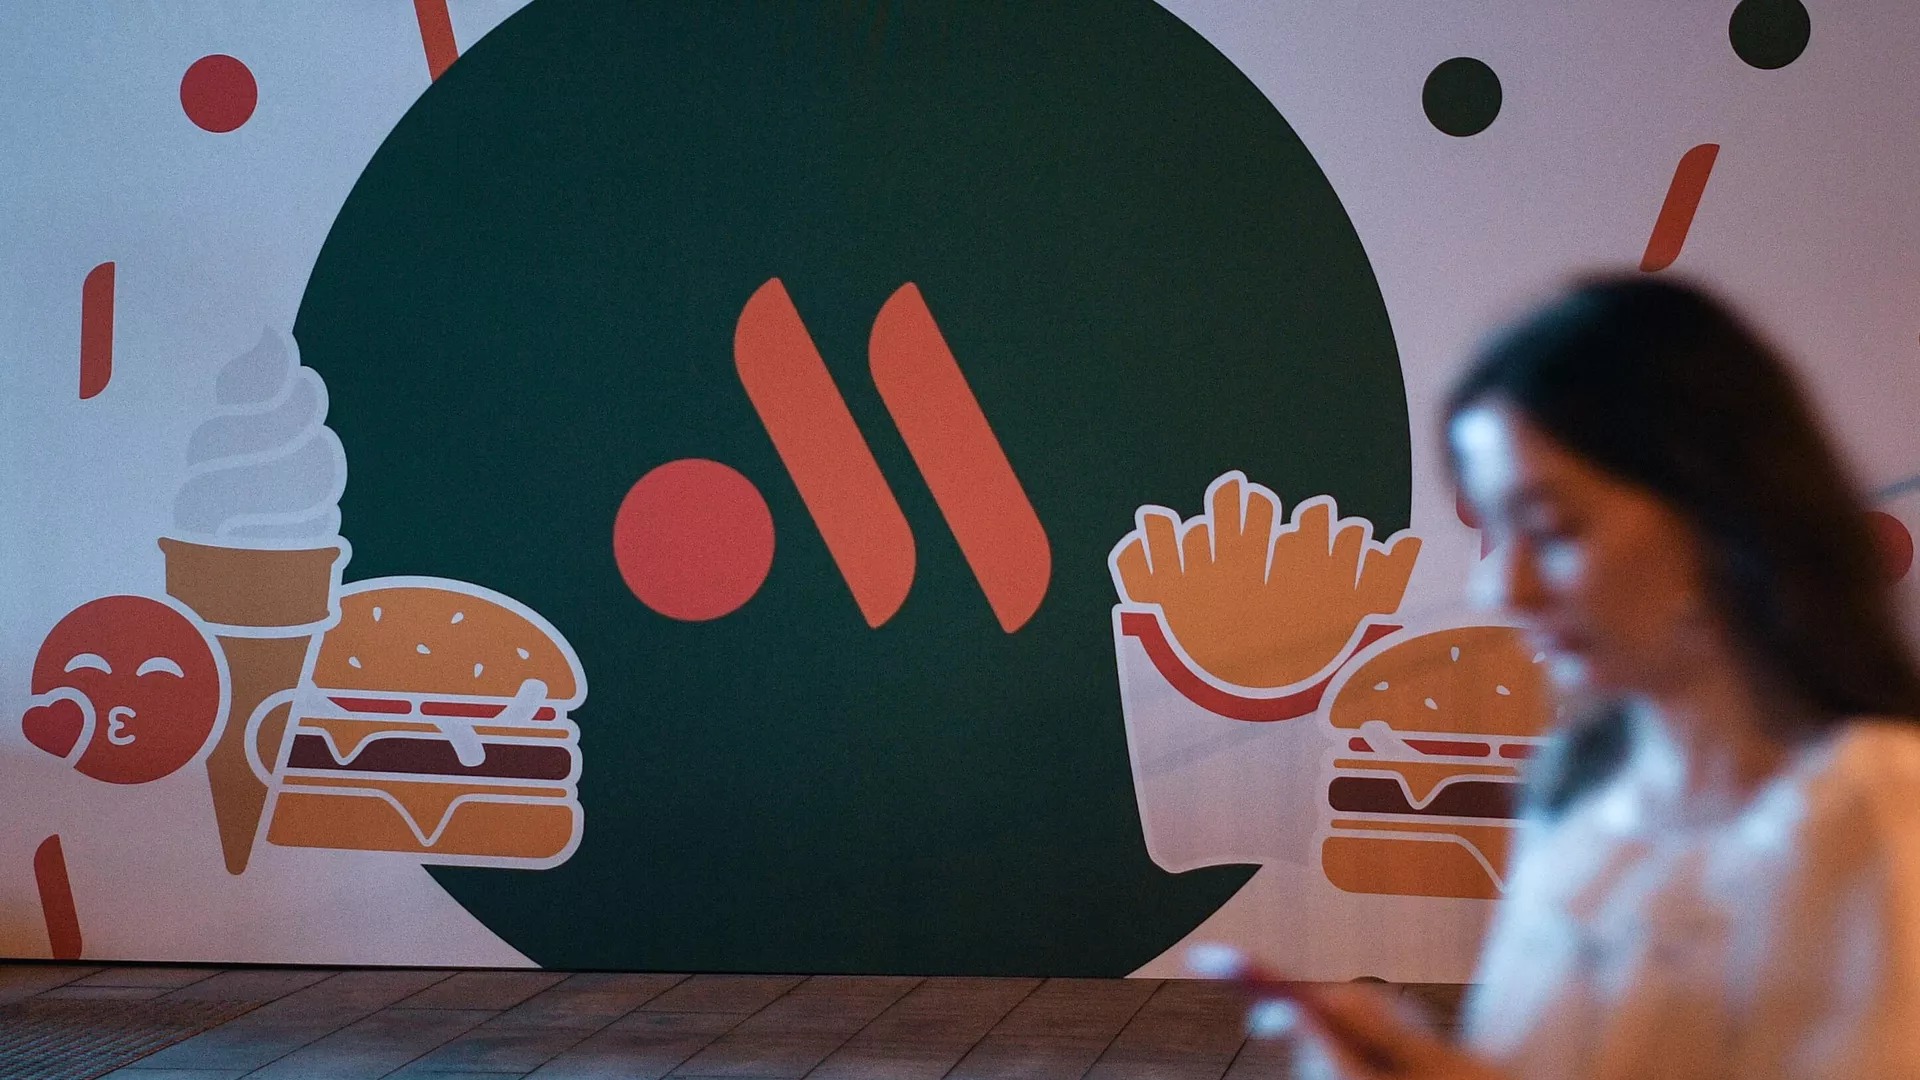 "Російський McDonald's" вкрав логотип у португальського виробника кормів для тварин